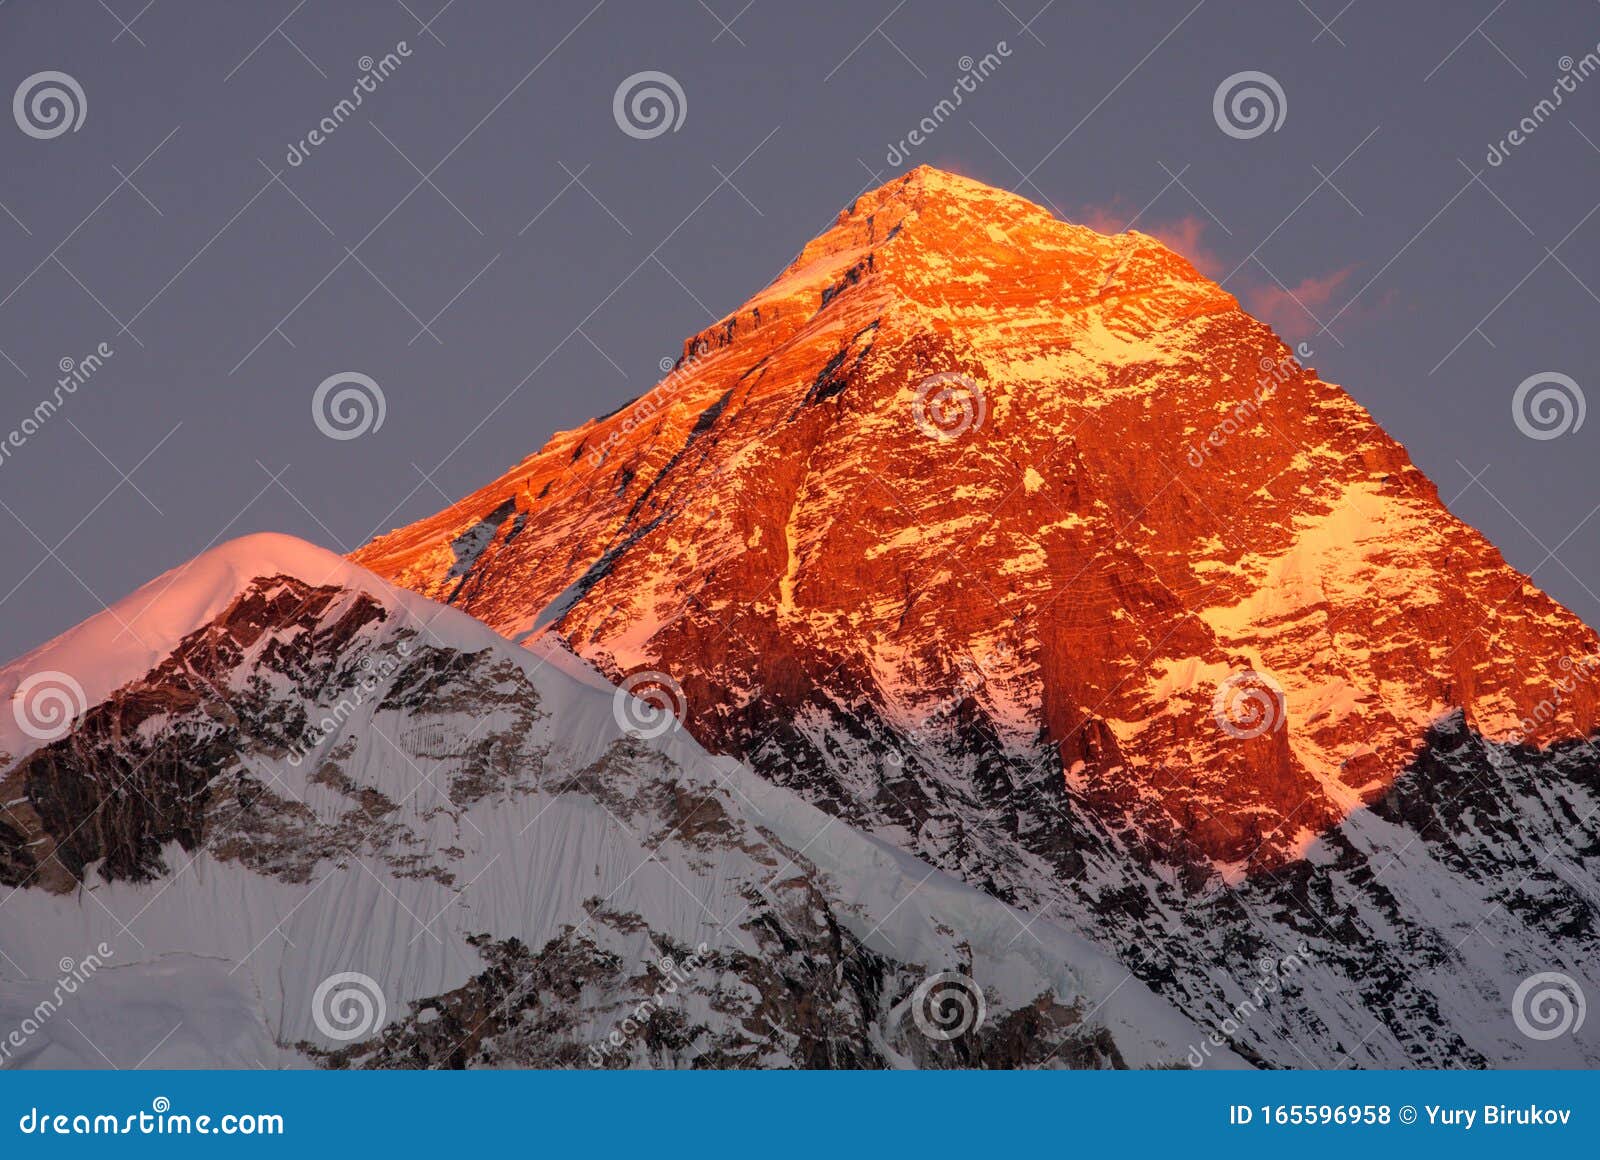 世界最高峰 珠穆朗玛峰库存照片 图片包括有喜马拉雅山 挂接 迁徙 本质 岩石 世界 165596958